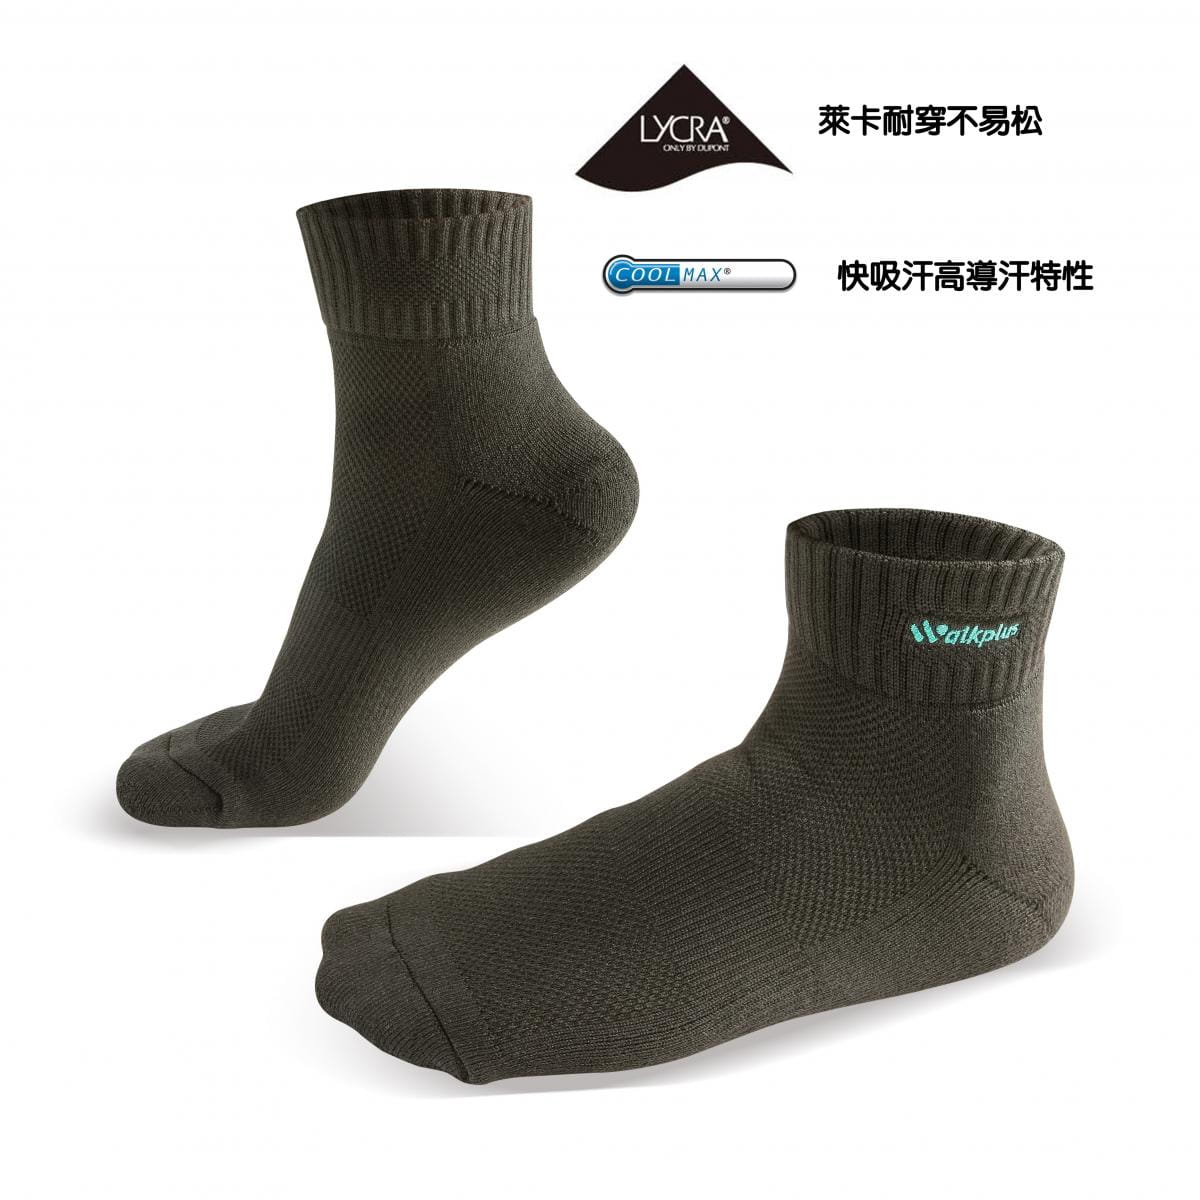 竹炭系列-毛巾厚底短襪 0